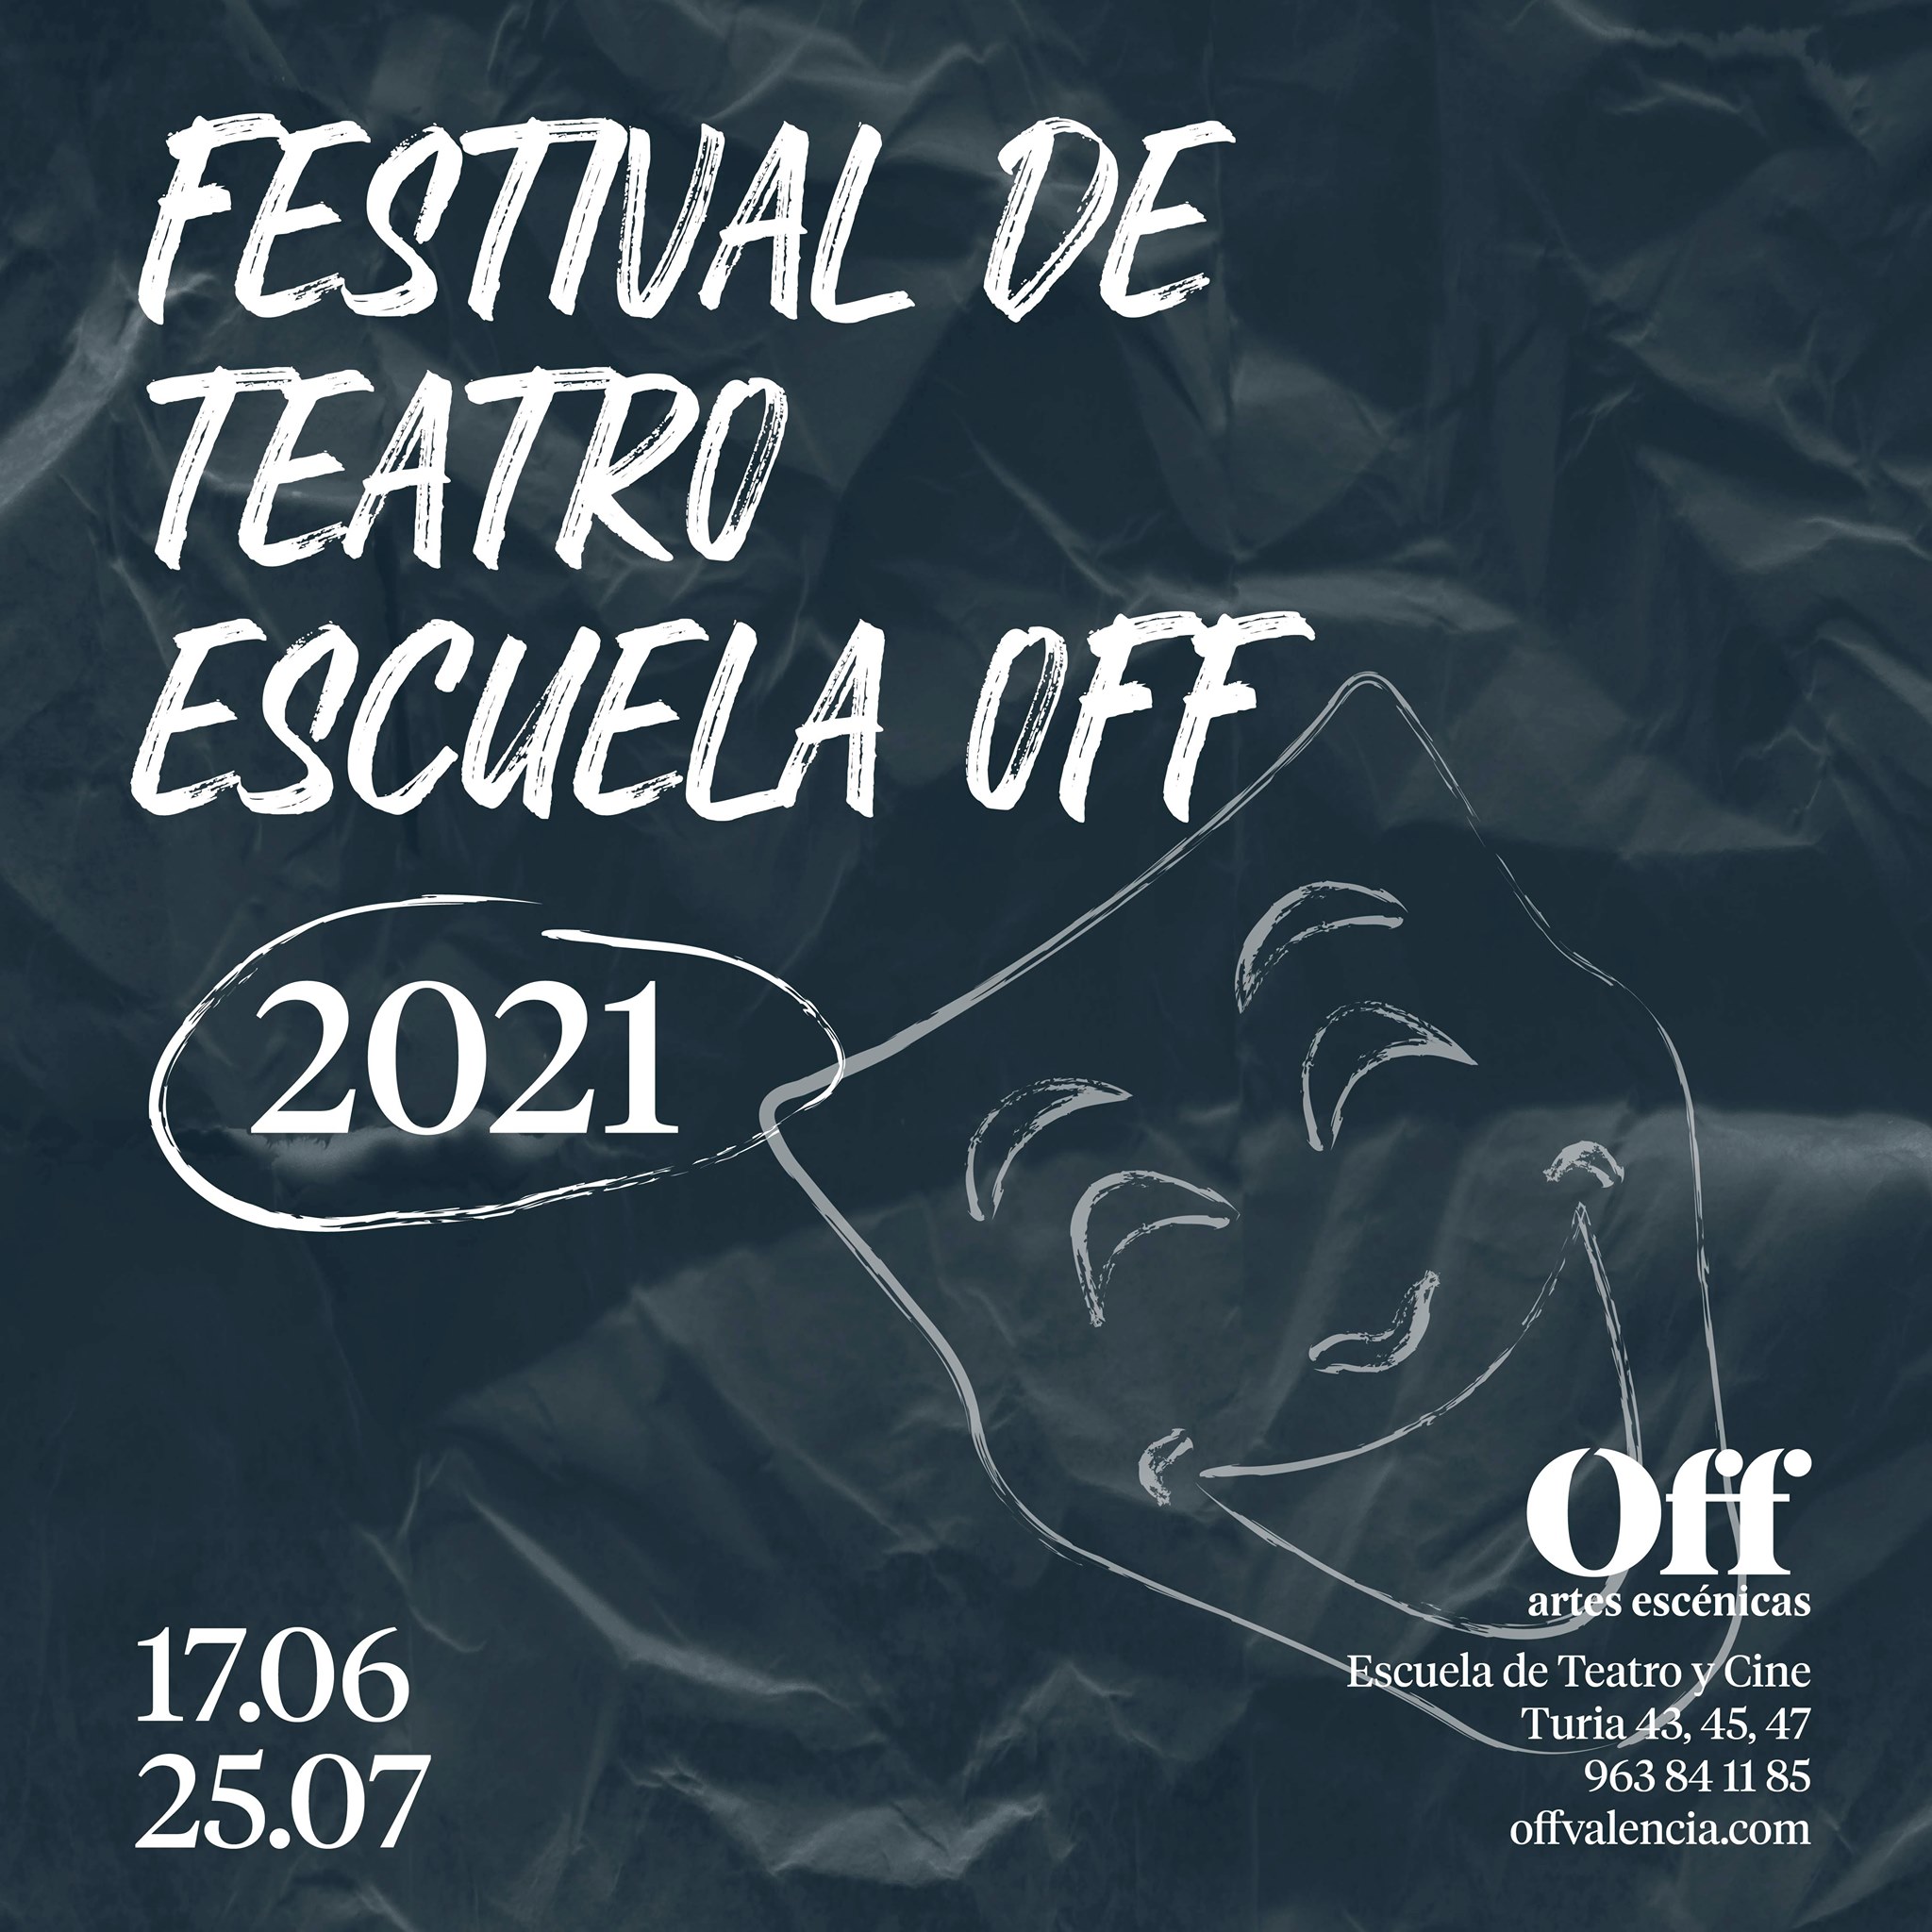 Un sinfín de musicales, dramaturgias clásicas y de creación propia convivirán sobre el escenario de la Sala Off y el Teatre Talia